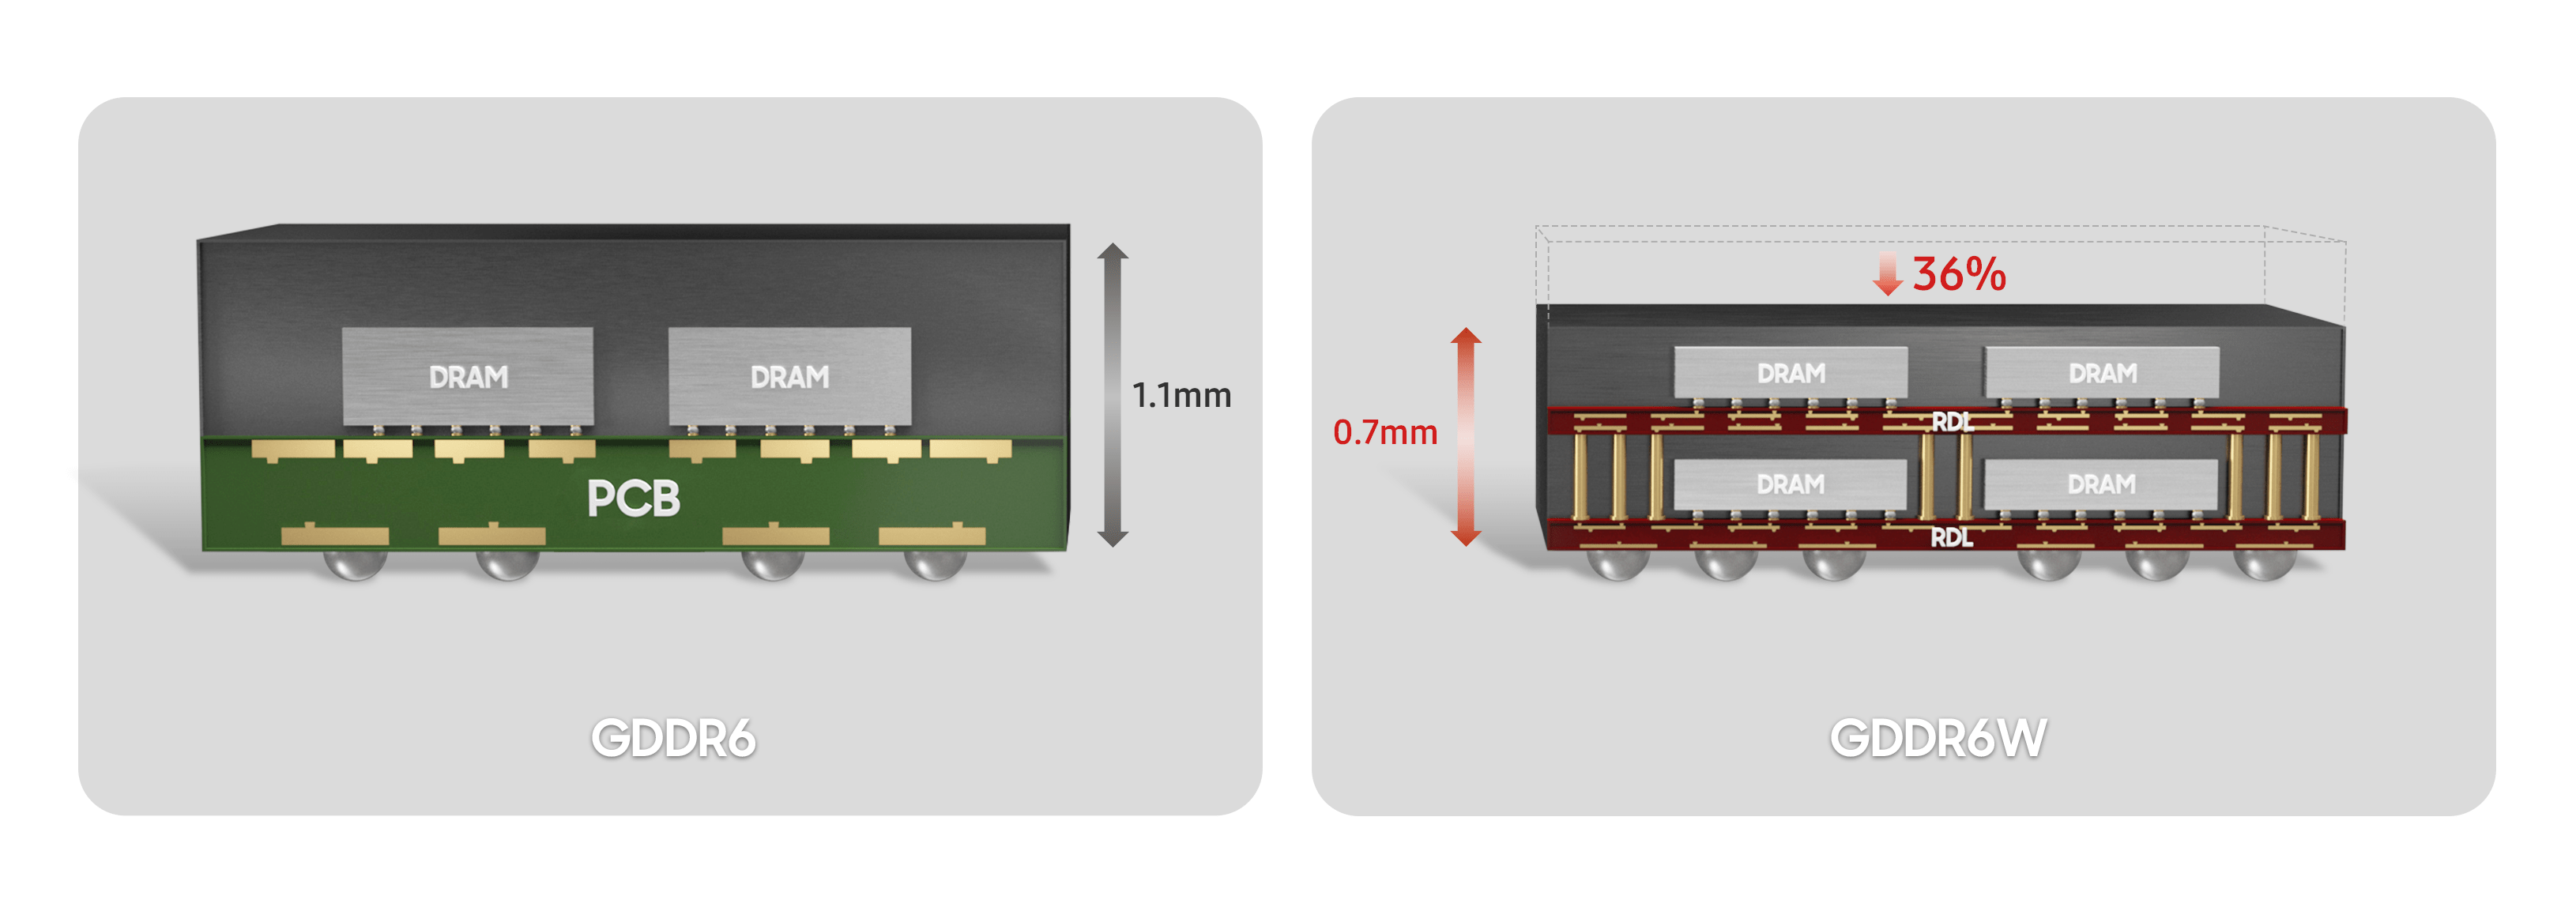 サムスンGDDR6とGDDR6Wのパッケージ比較